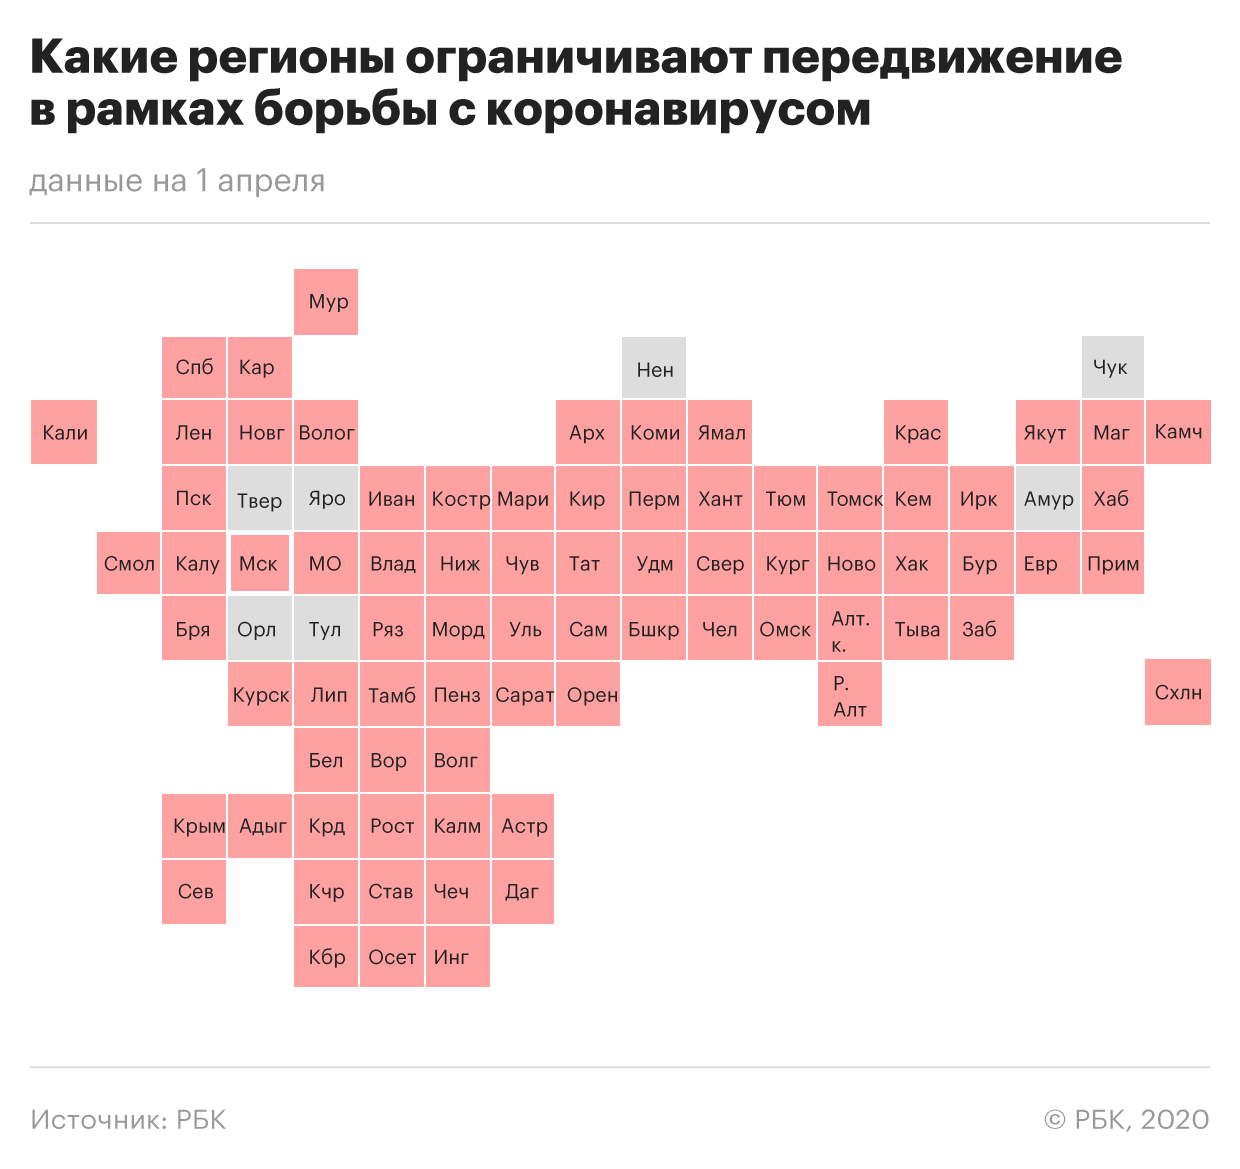 «Коронавирус в России»: Где и сколько заболевших на сегодня, последние новости на 03.04.2020 — Заработала система мониторинга, главное к этому часу